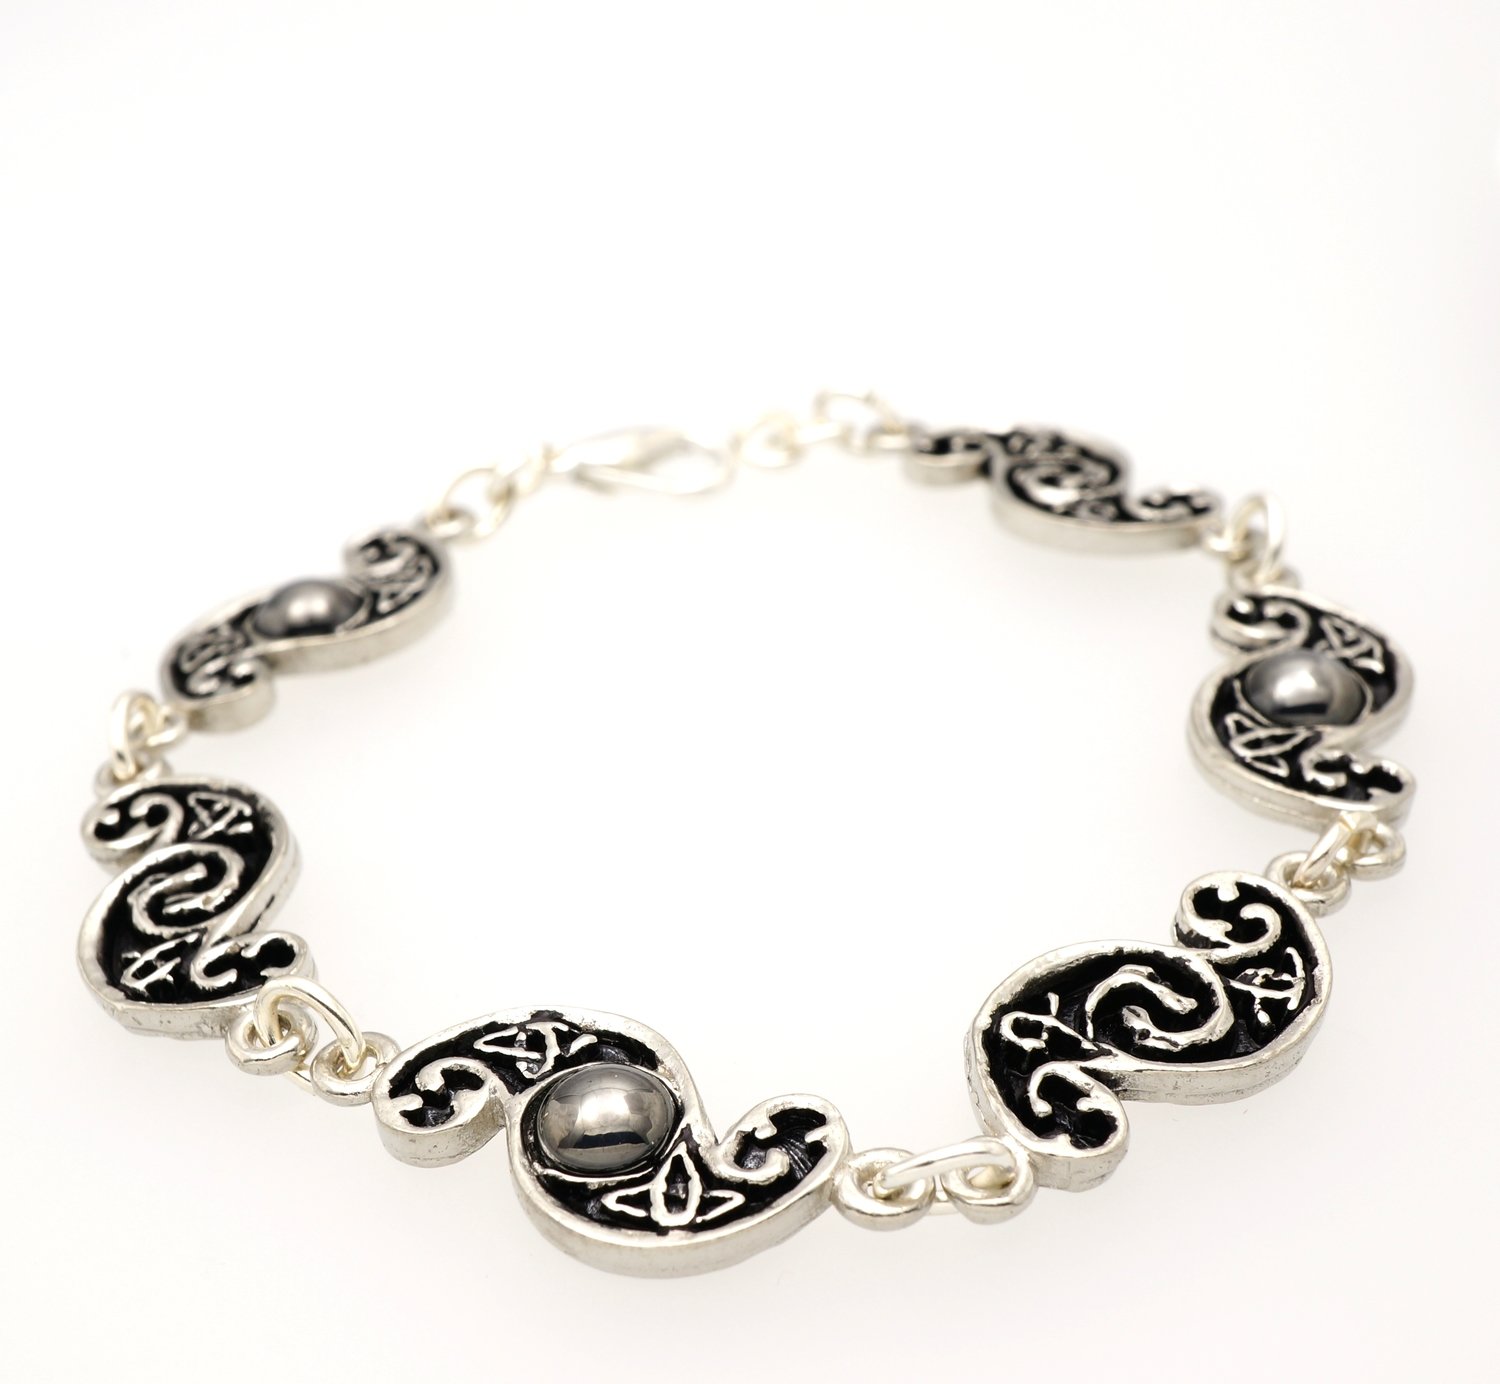 S-Shaped Celtic Design Hematite Moonstones Handmade Pewter Bracelet